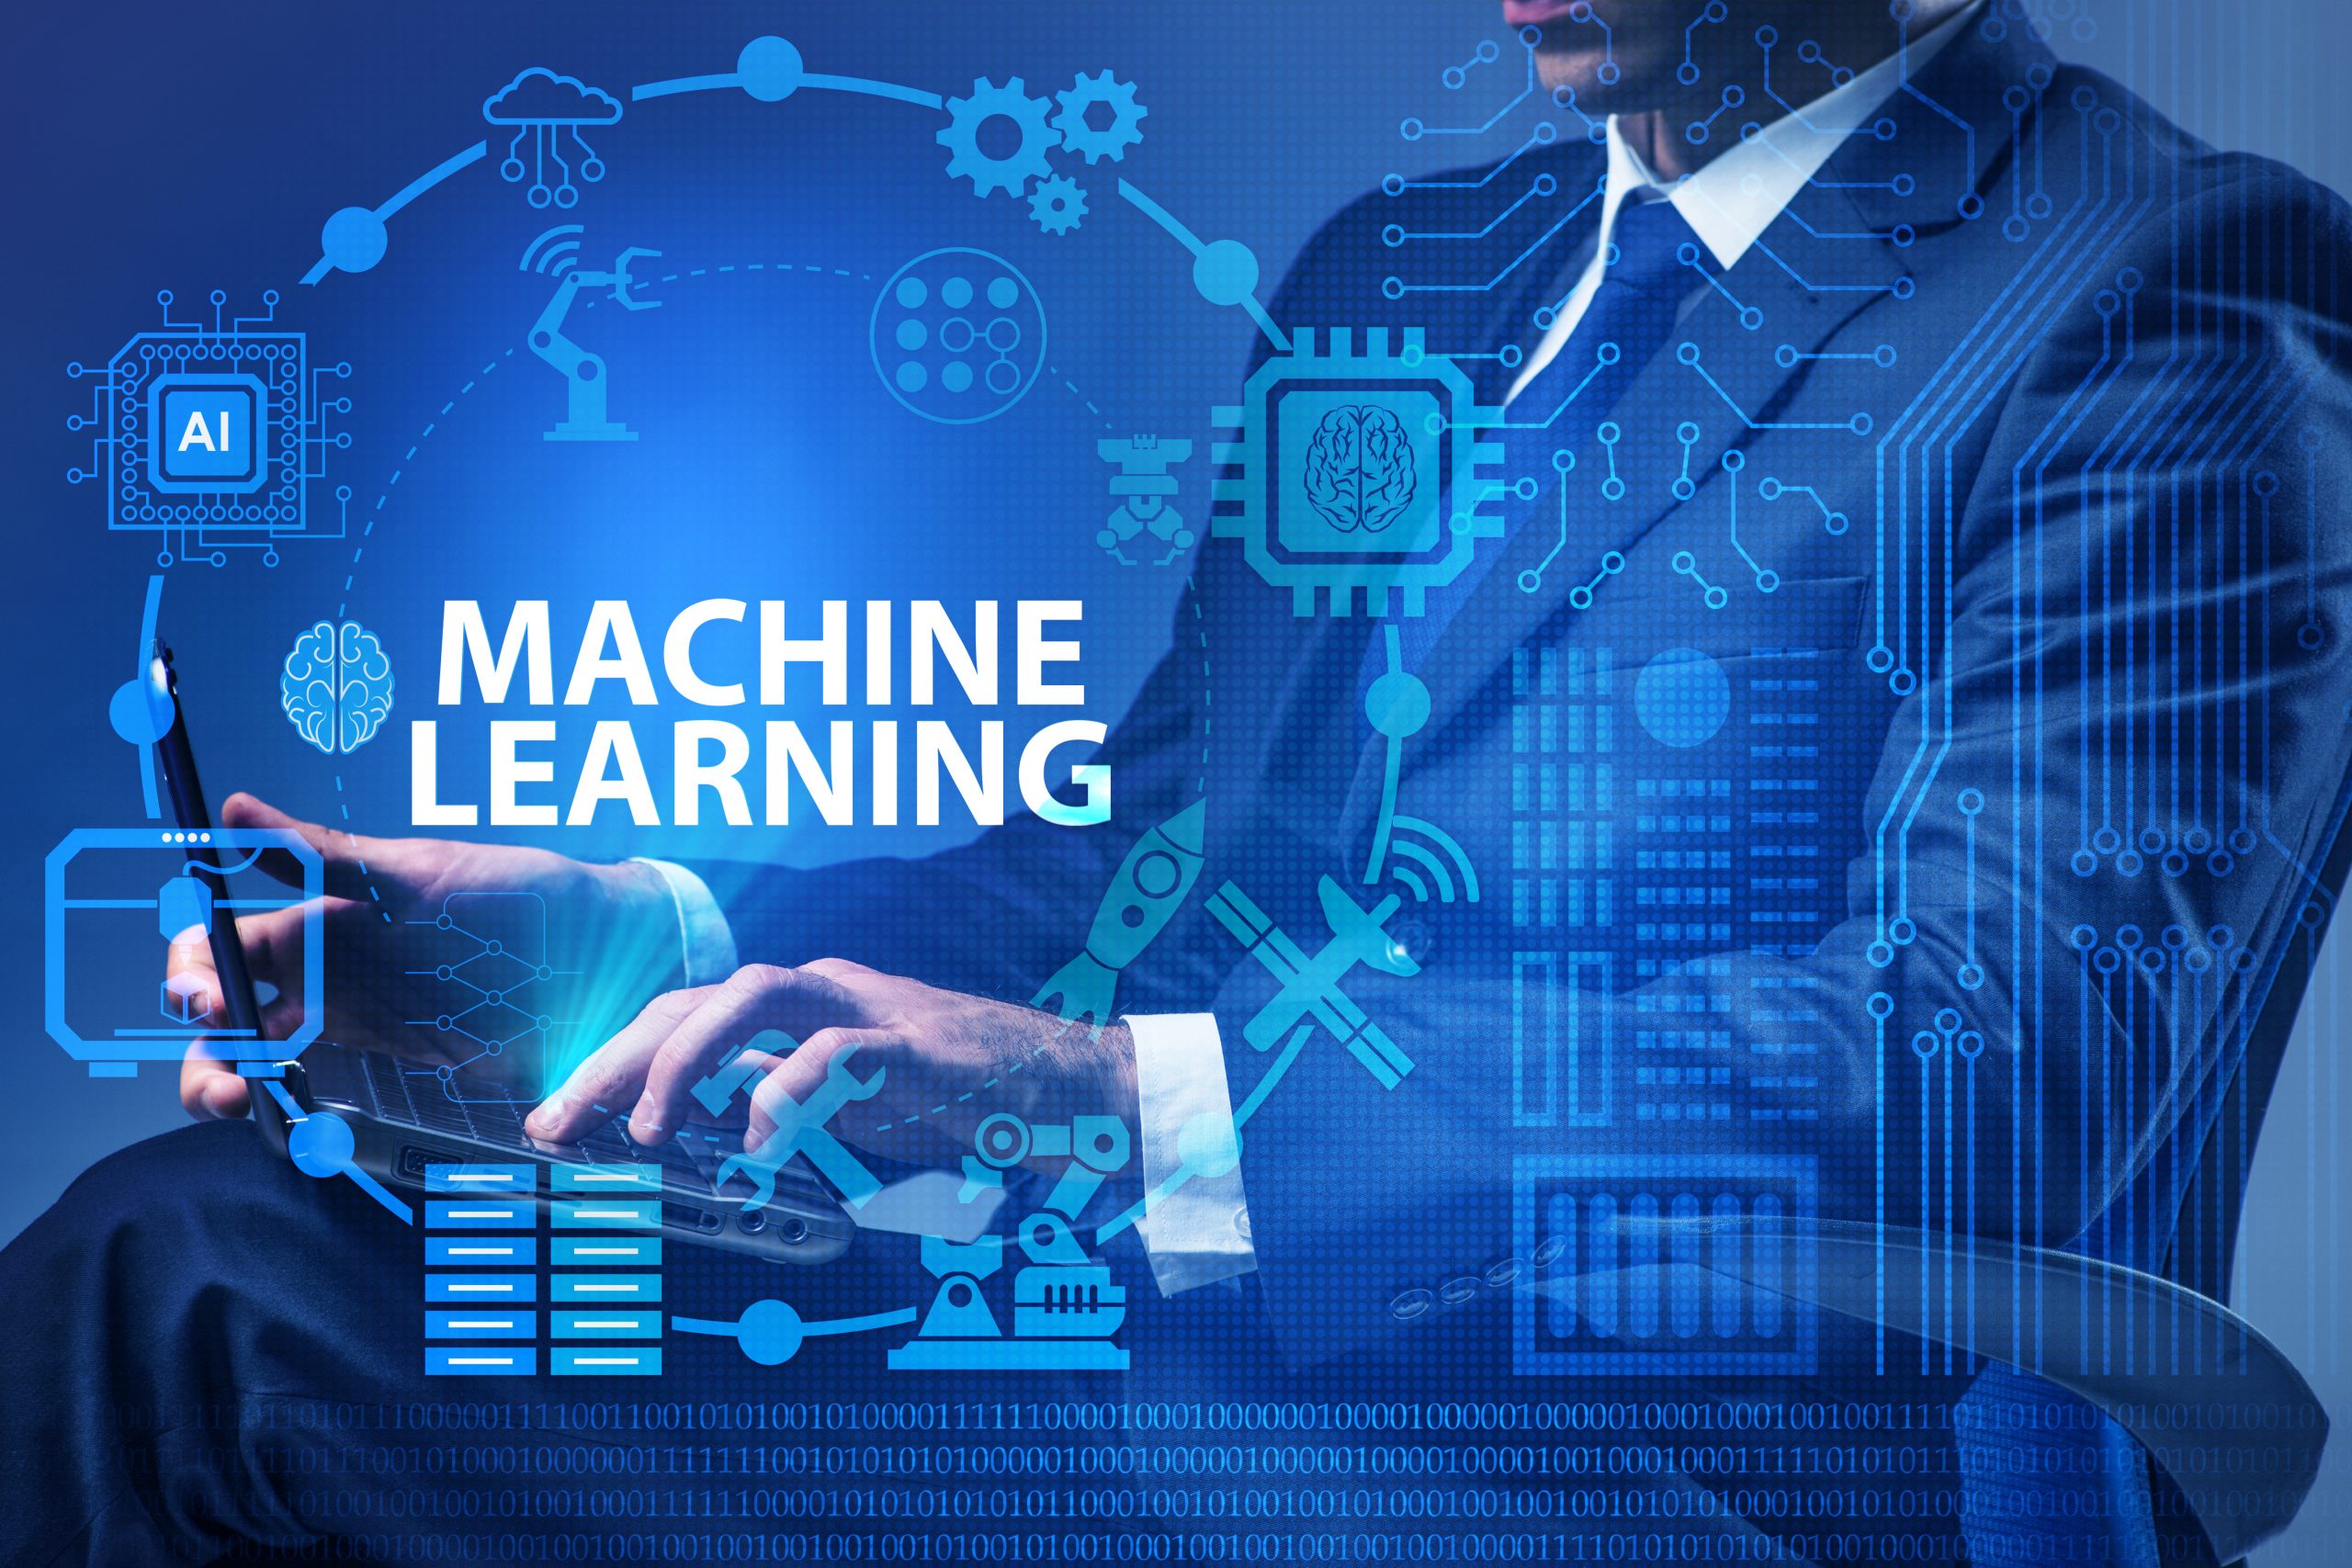 Ai learning. Машинное обучение. Машинный. Машинное обучение (Machine Learning). Искусственный интеллект и большие данные.